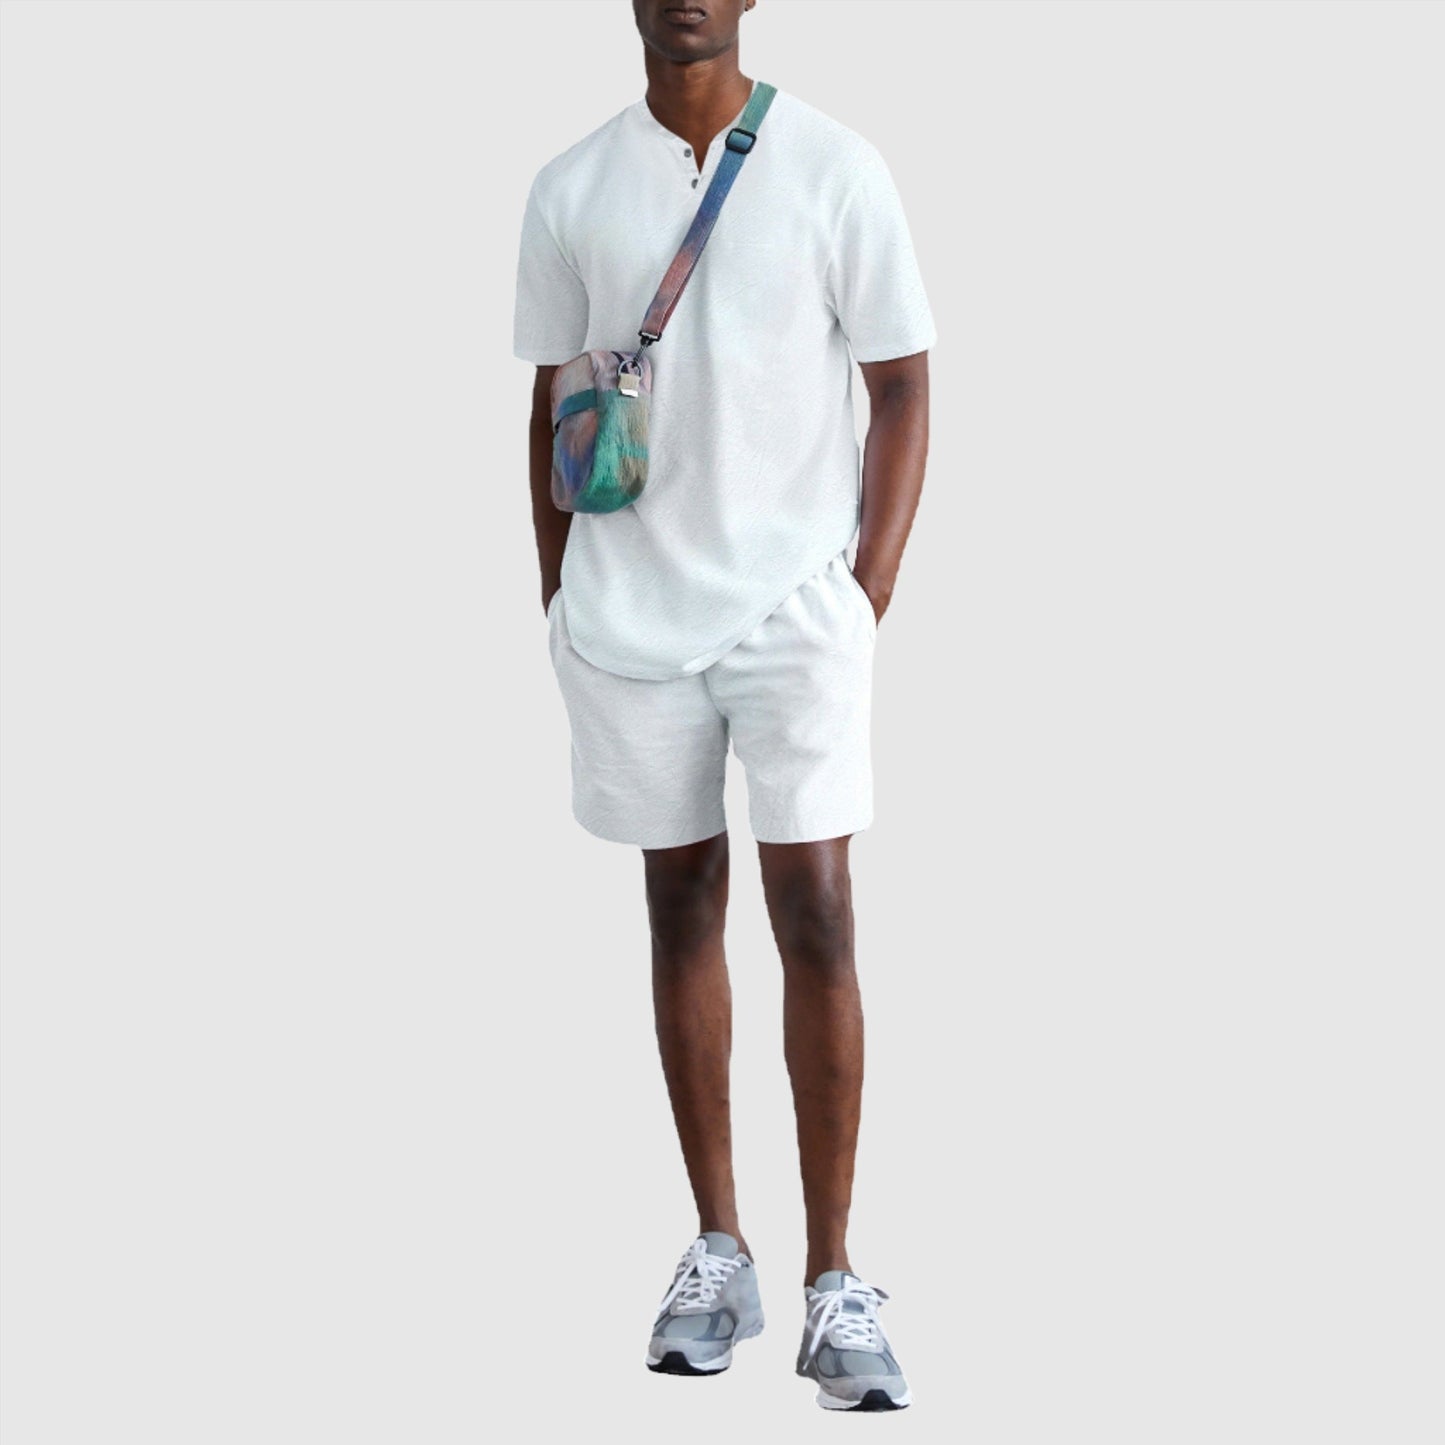 Herren-Outfit-Set mit kurzärmligem T-Shirt und Shorts aus Baumwollimitat und Leinen